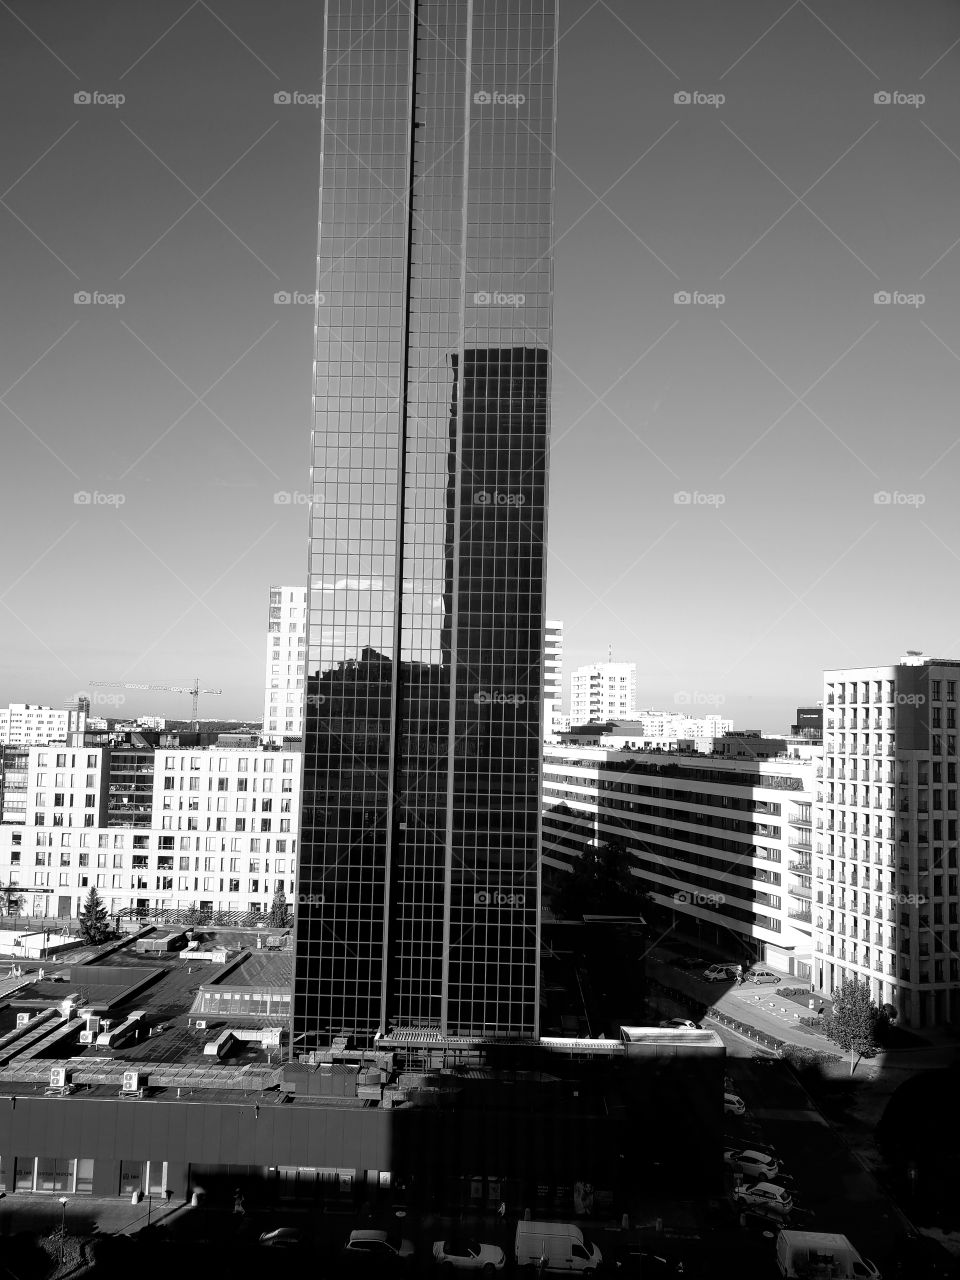 skyscraper2